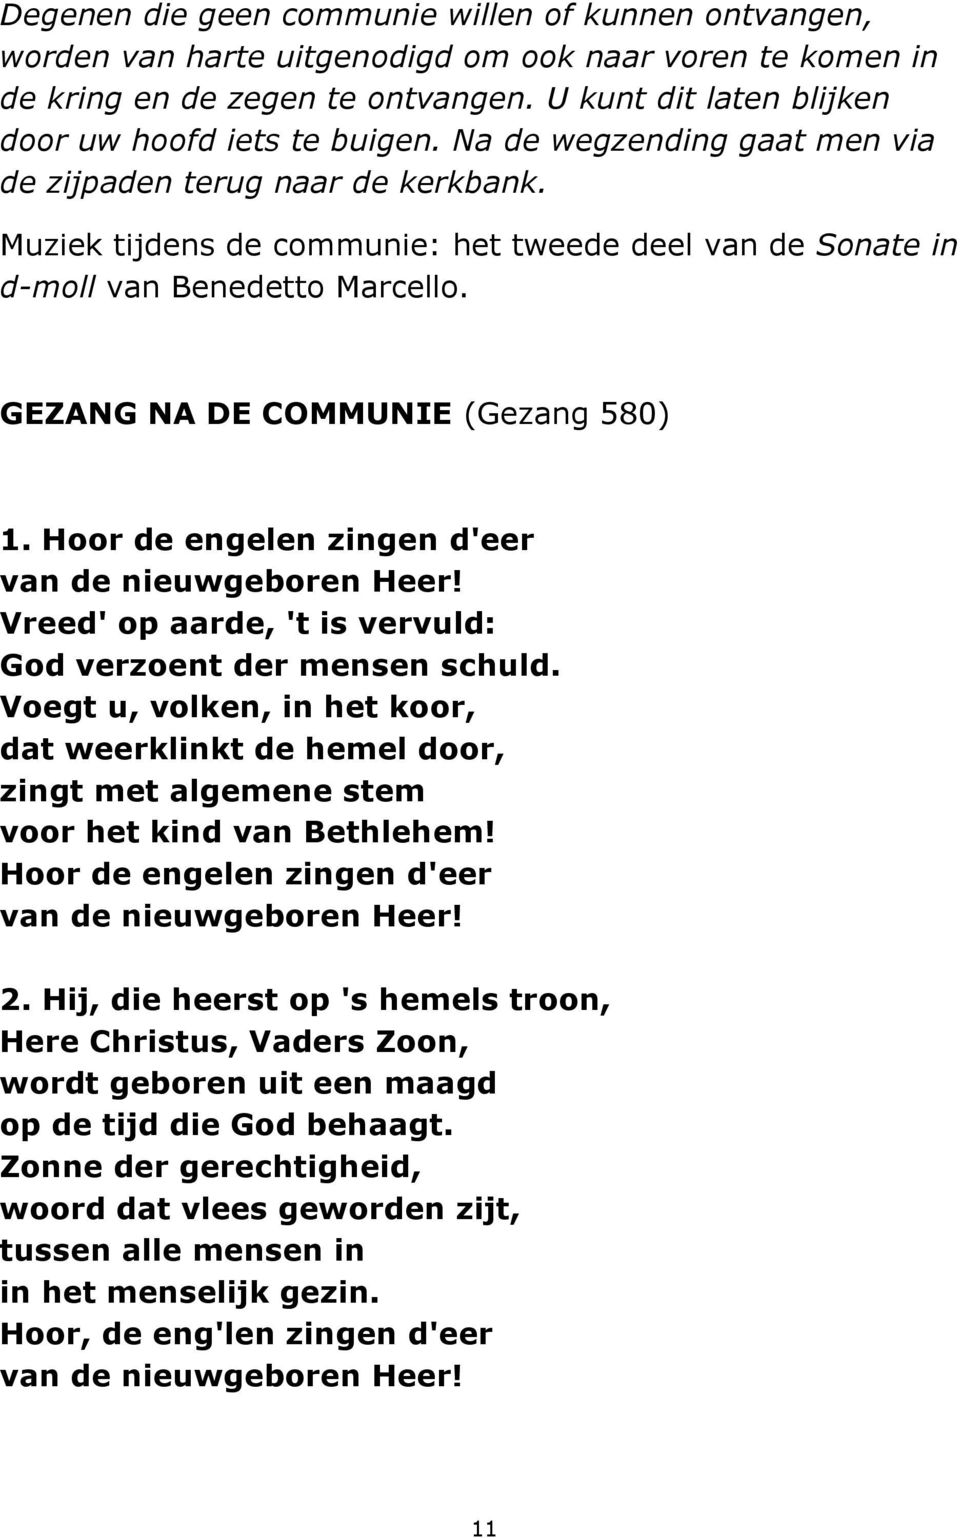 Muziek tijdens de communie: het tweede deel van de Sonate in d-moll van Benedetto Marcello. GEZANG NA DE COMMUNIE (Gezang 580) 1. Hoor de engelen zingen d'eer van de nieuwgeboren Heer!